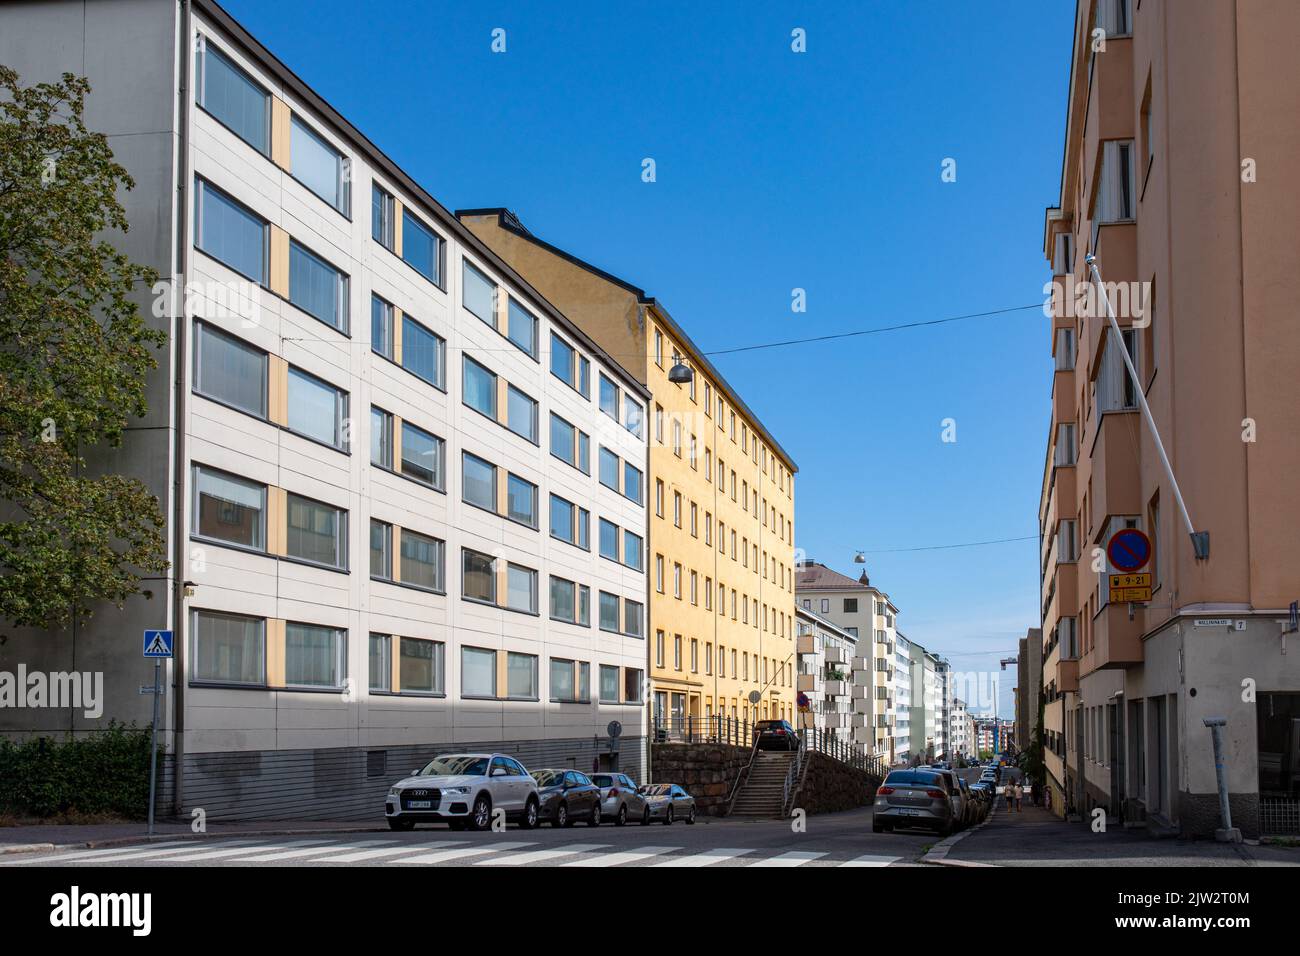 Kolmas linja Street view in Kallio district of Helsinki, Finlandia Foto de stock